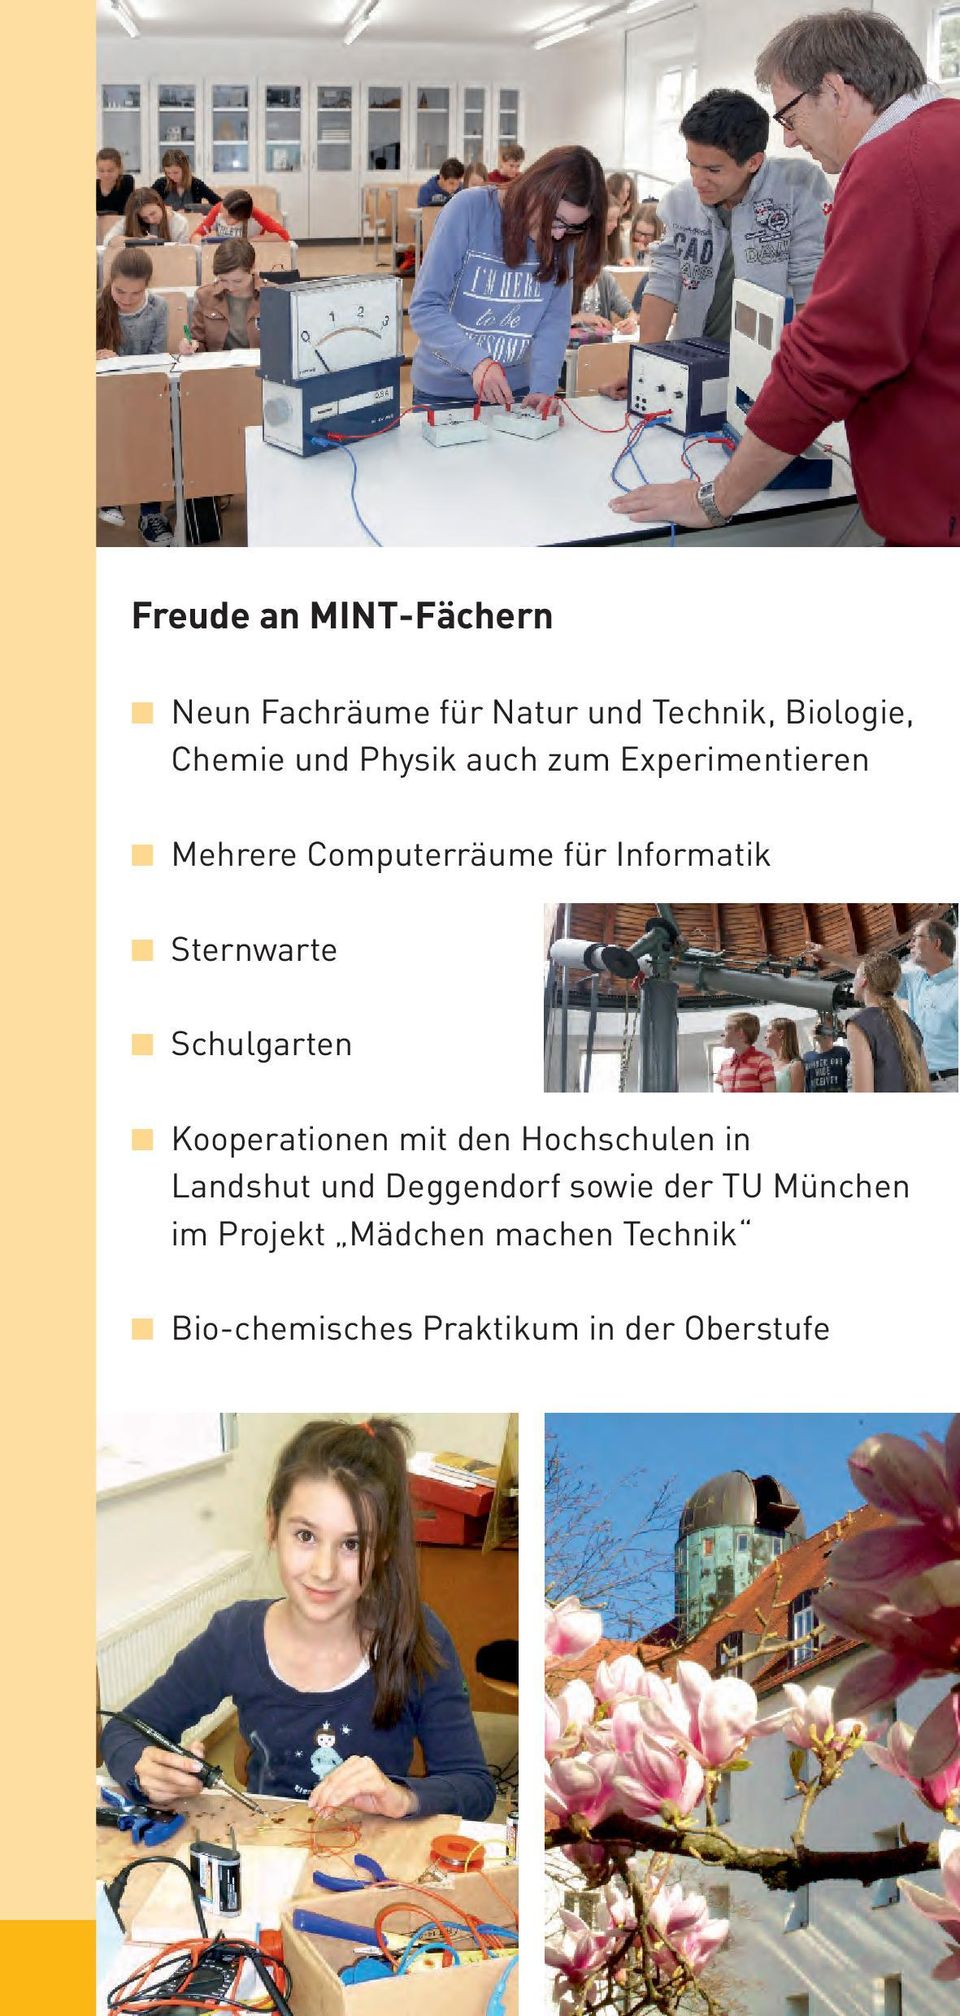 Schulgarten Kooperationen mit den Hochschulen in Landshut und Deggendorf sowie der